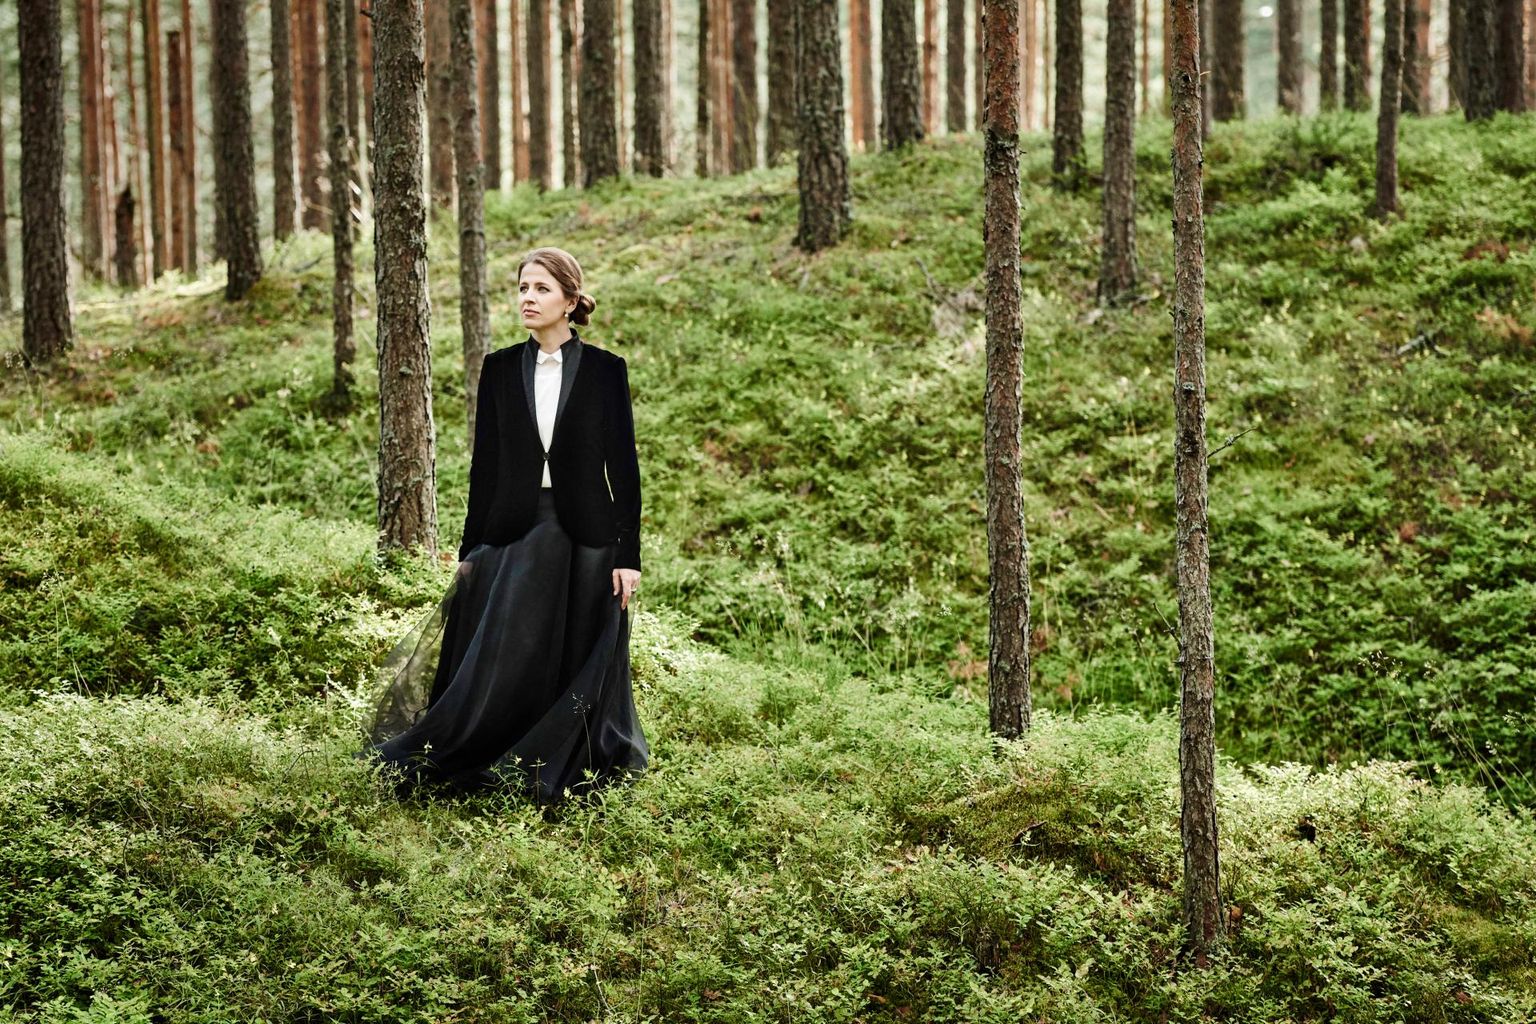 Dirigent Kristiina Poska eelmine hooaeg, mis pandeemia tõttu vahele jäi, andis haruldase võimaluse olla terve aasta Eestis, võtta aeg maha, jalutada metsas ja mere ääres. See oli aeg asjade üle järele mõelda. 